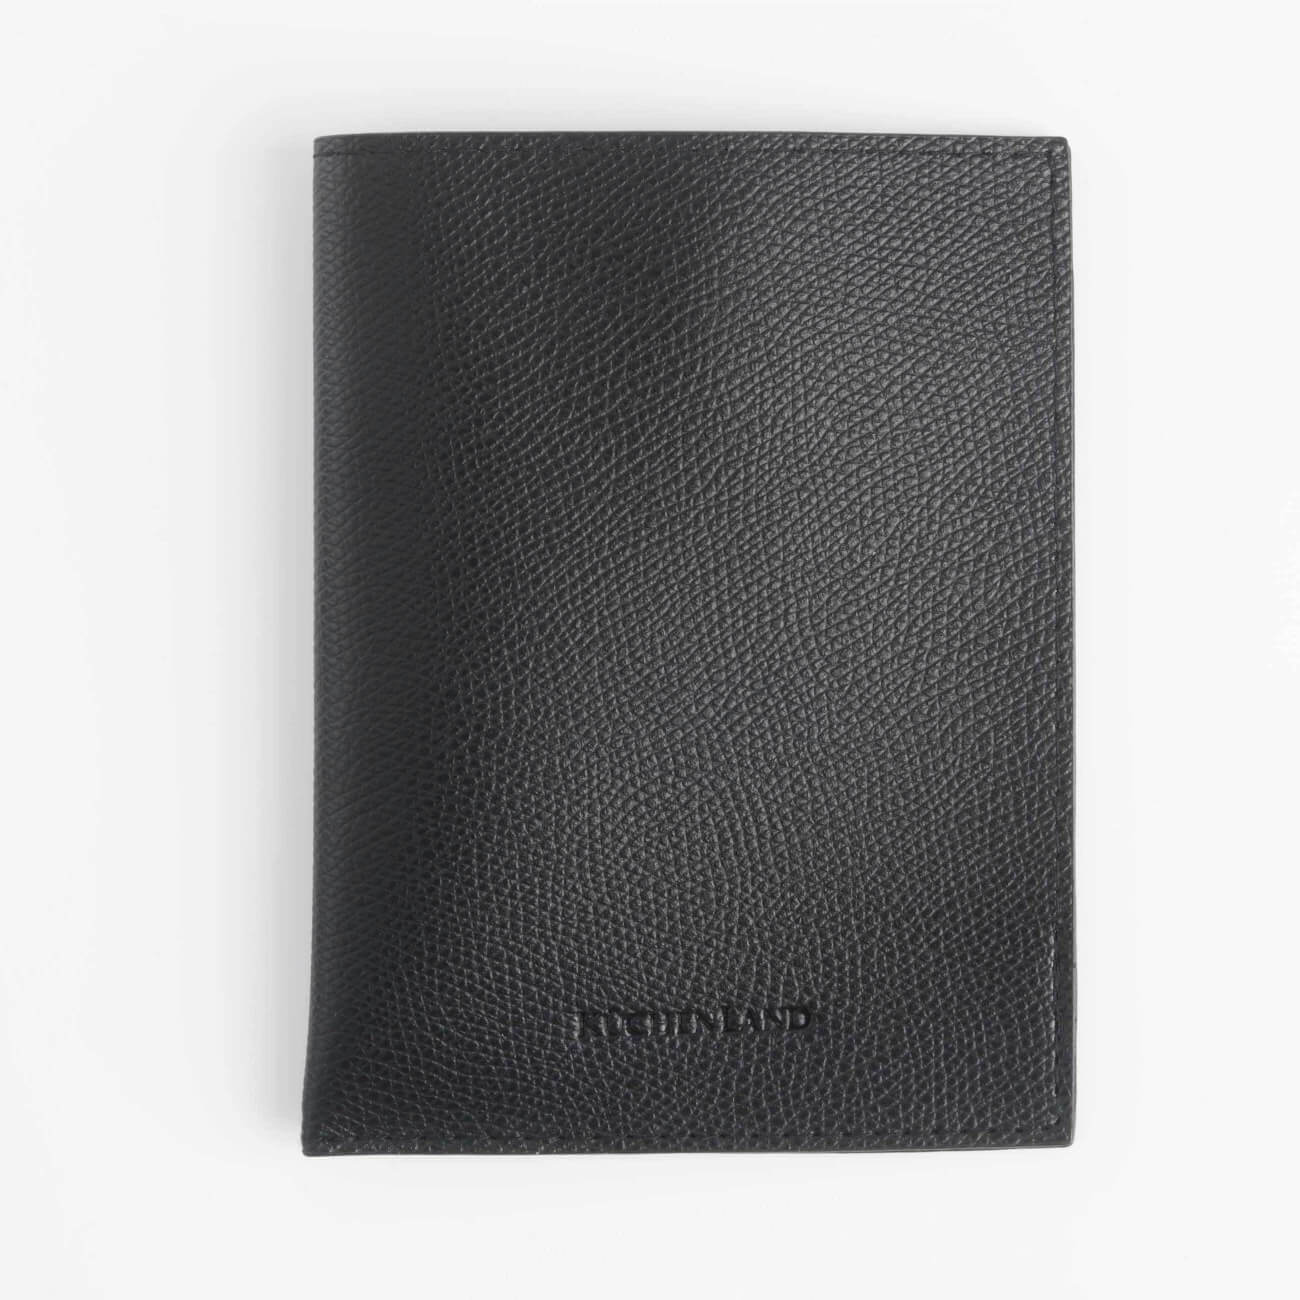 Чехол для паспорта, 10х13 см, полиуретан, черный, Memo изображение № 1